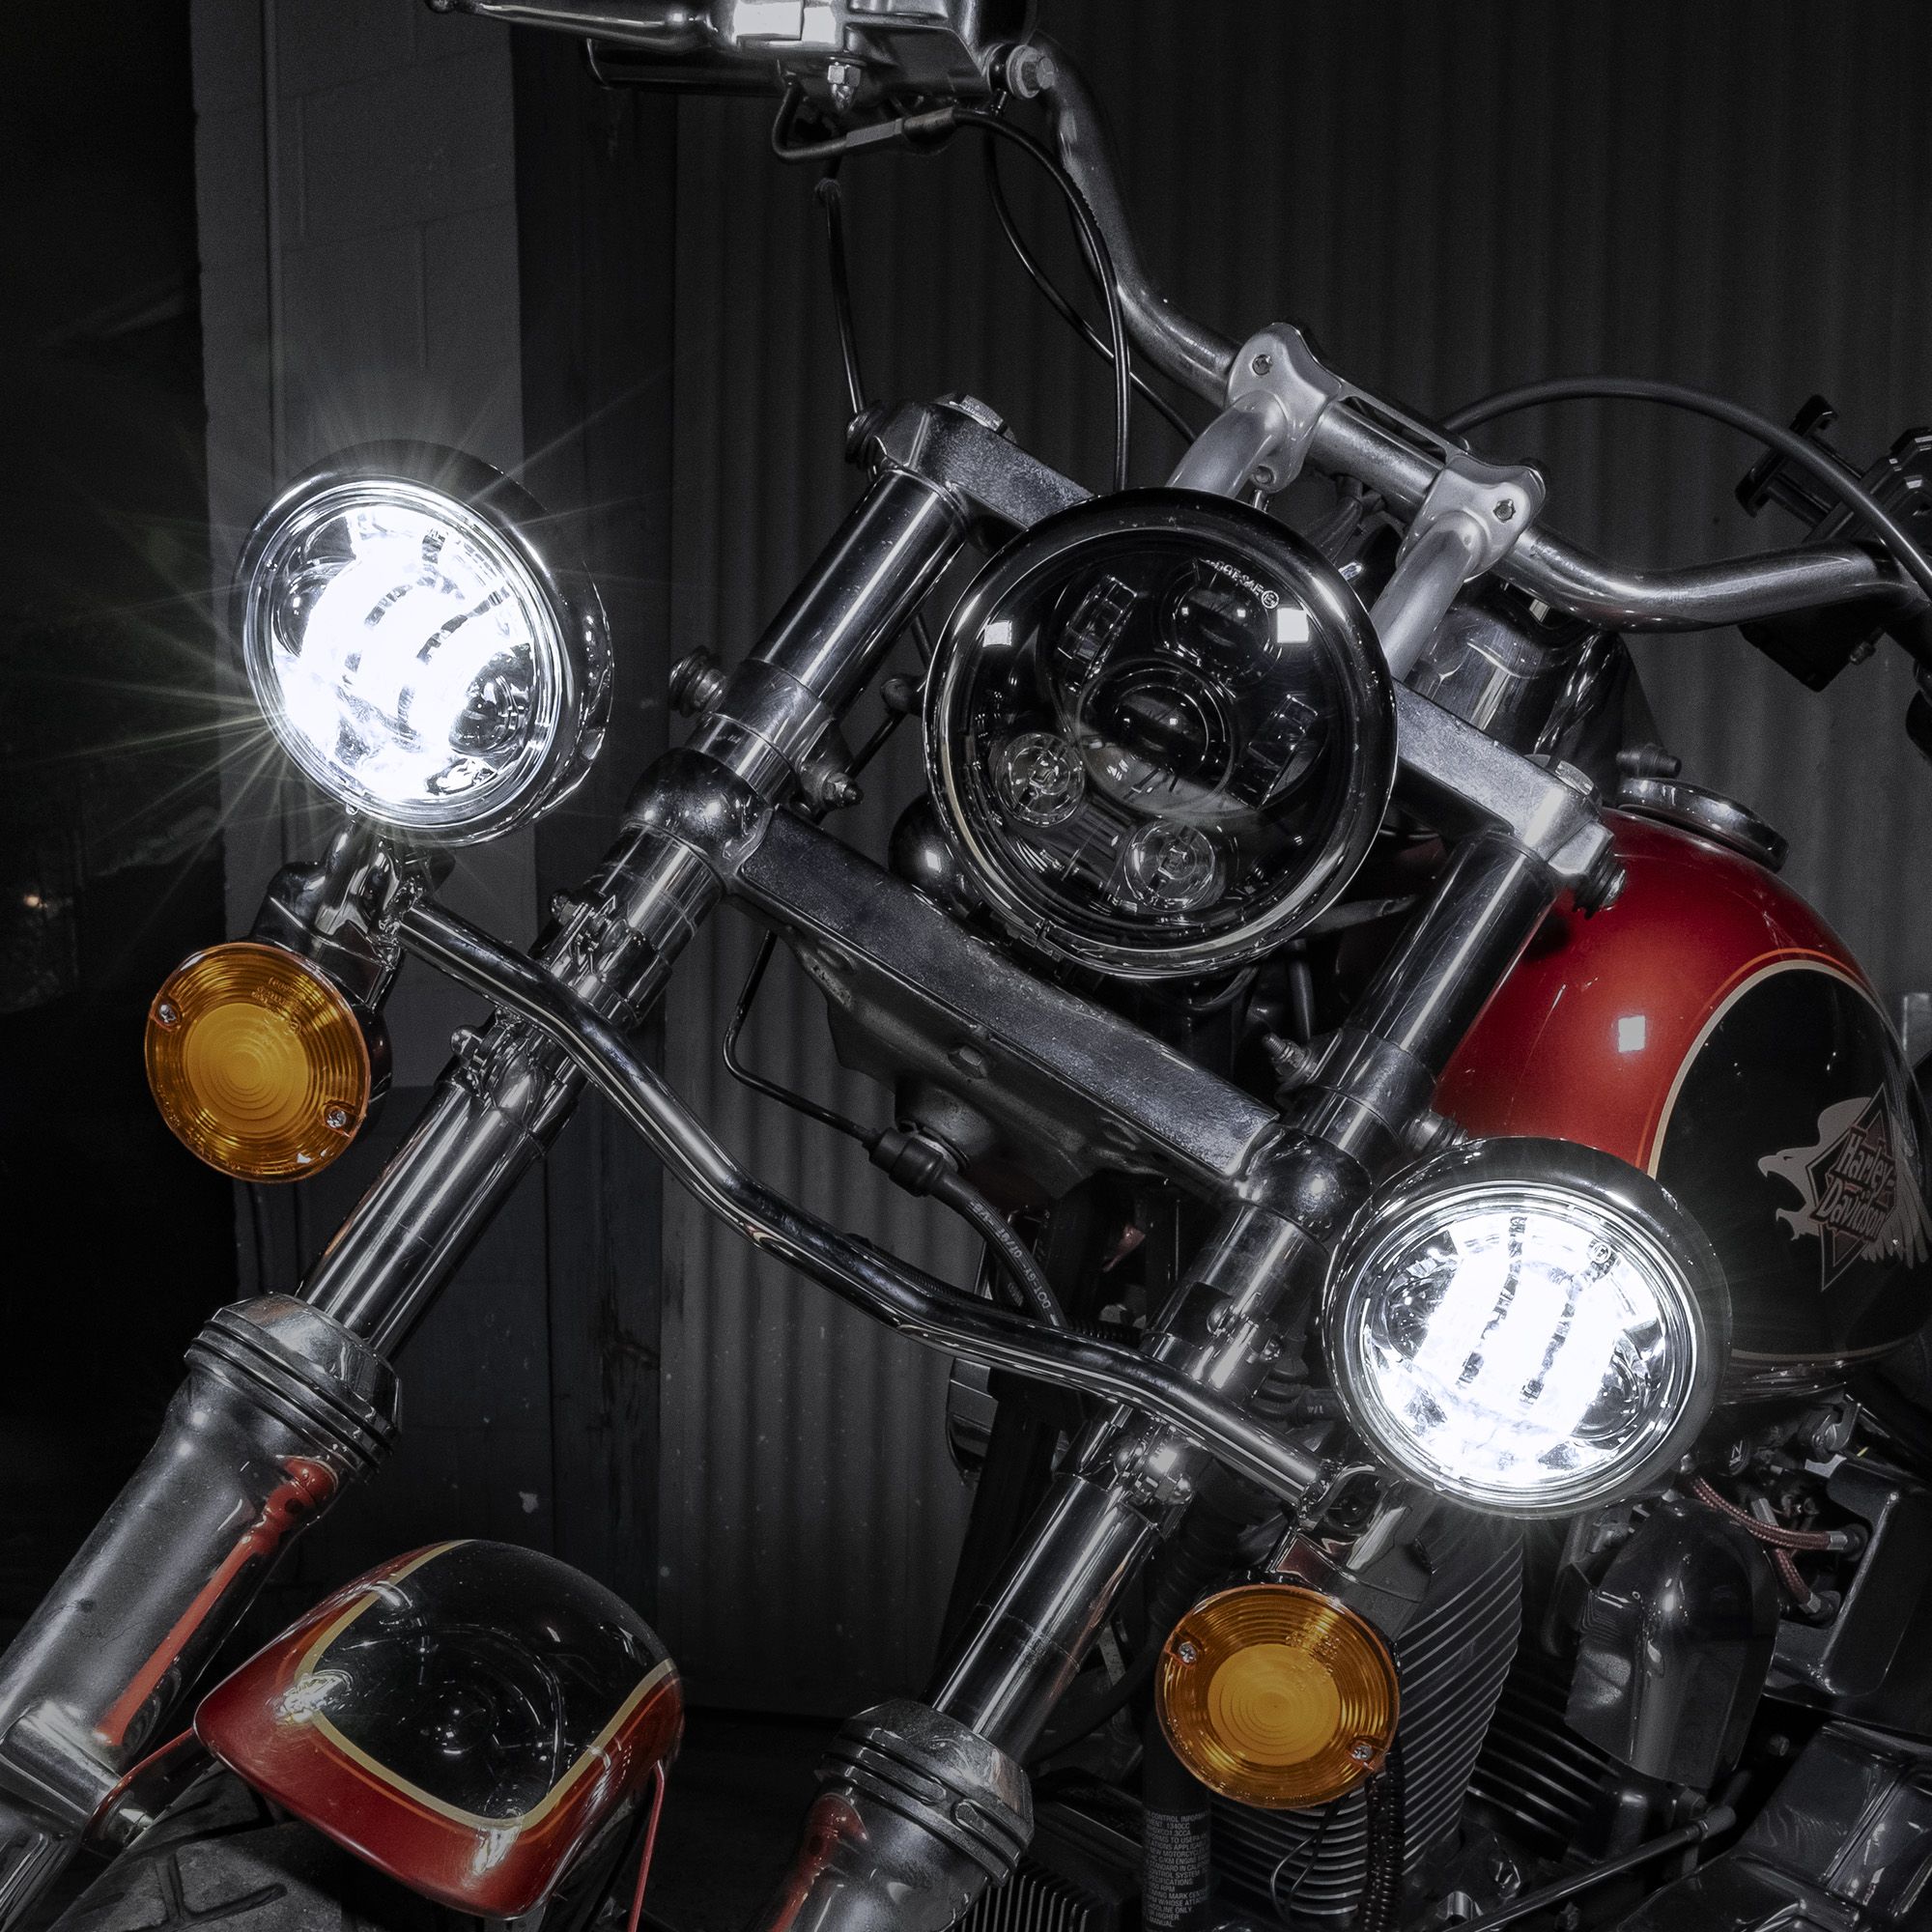 4.5-Inch LED Fog Light Kit for Harley Davidson - Chrome